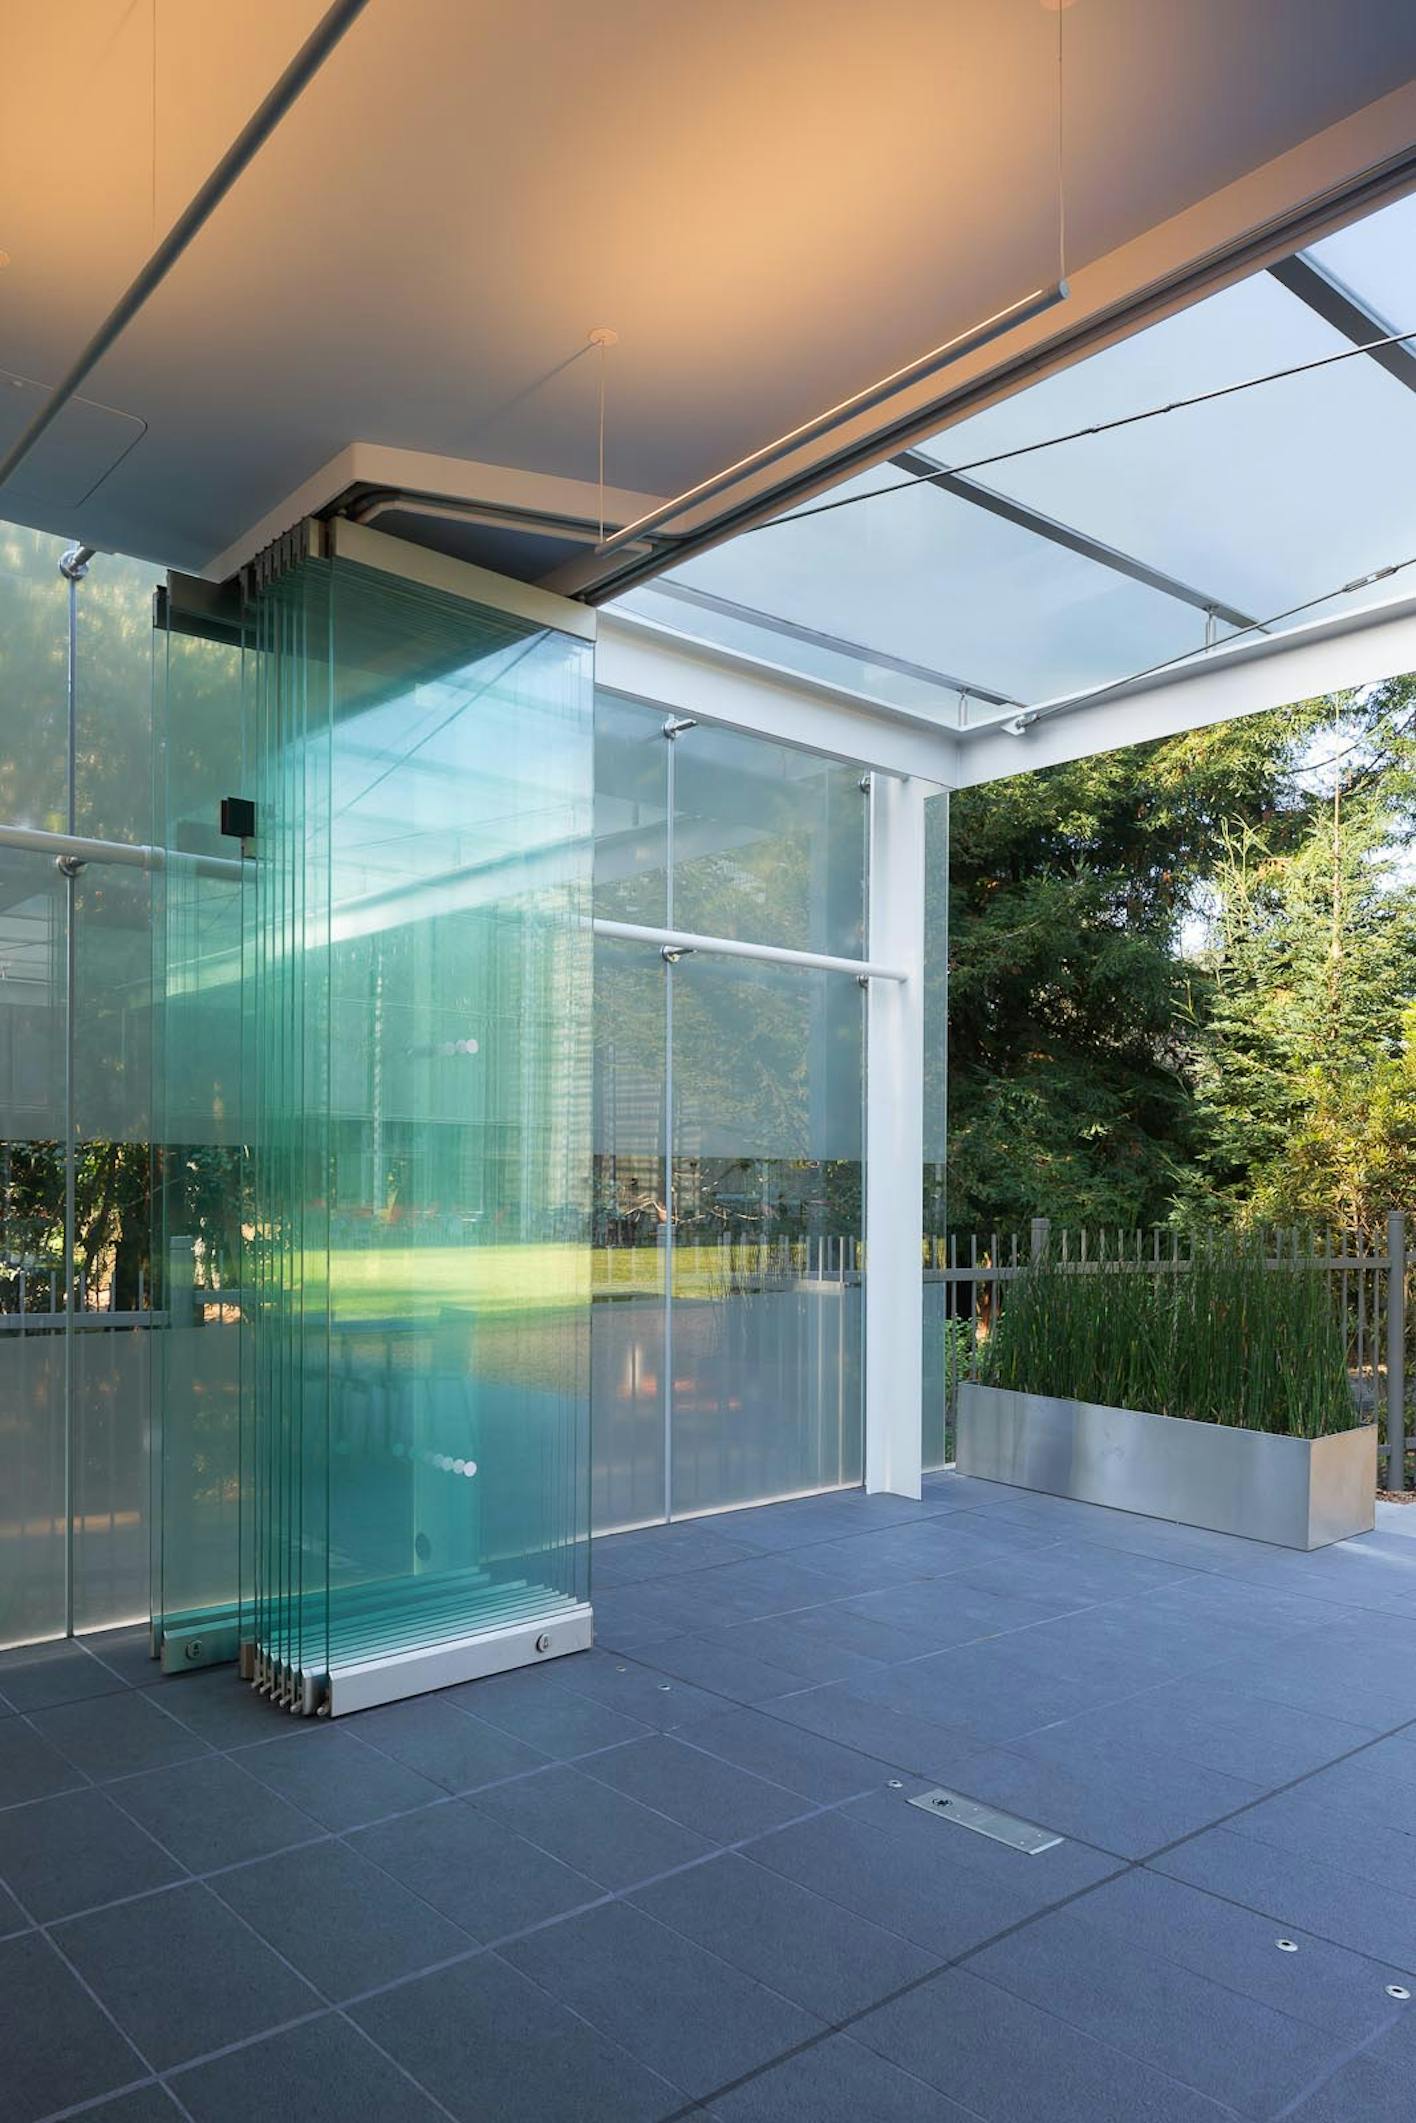 NanaWall frameless sliding glass wall system